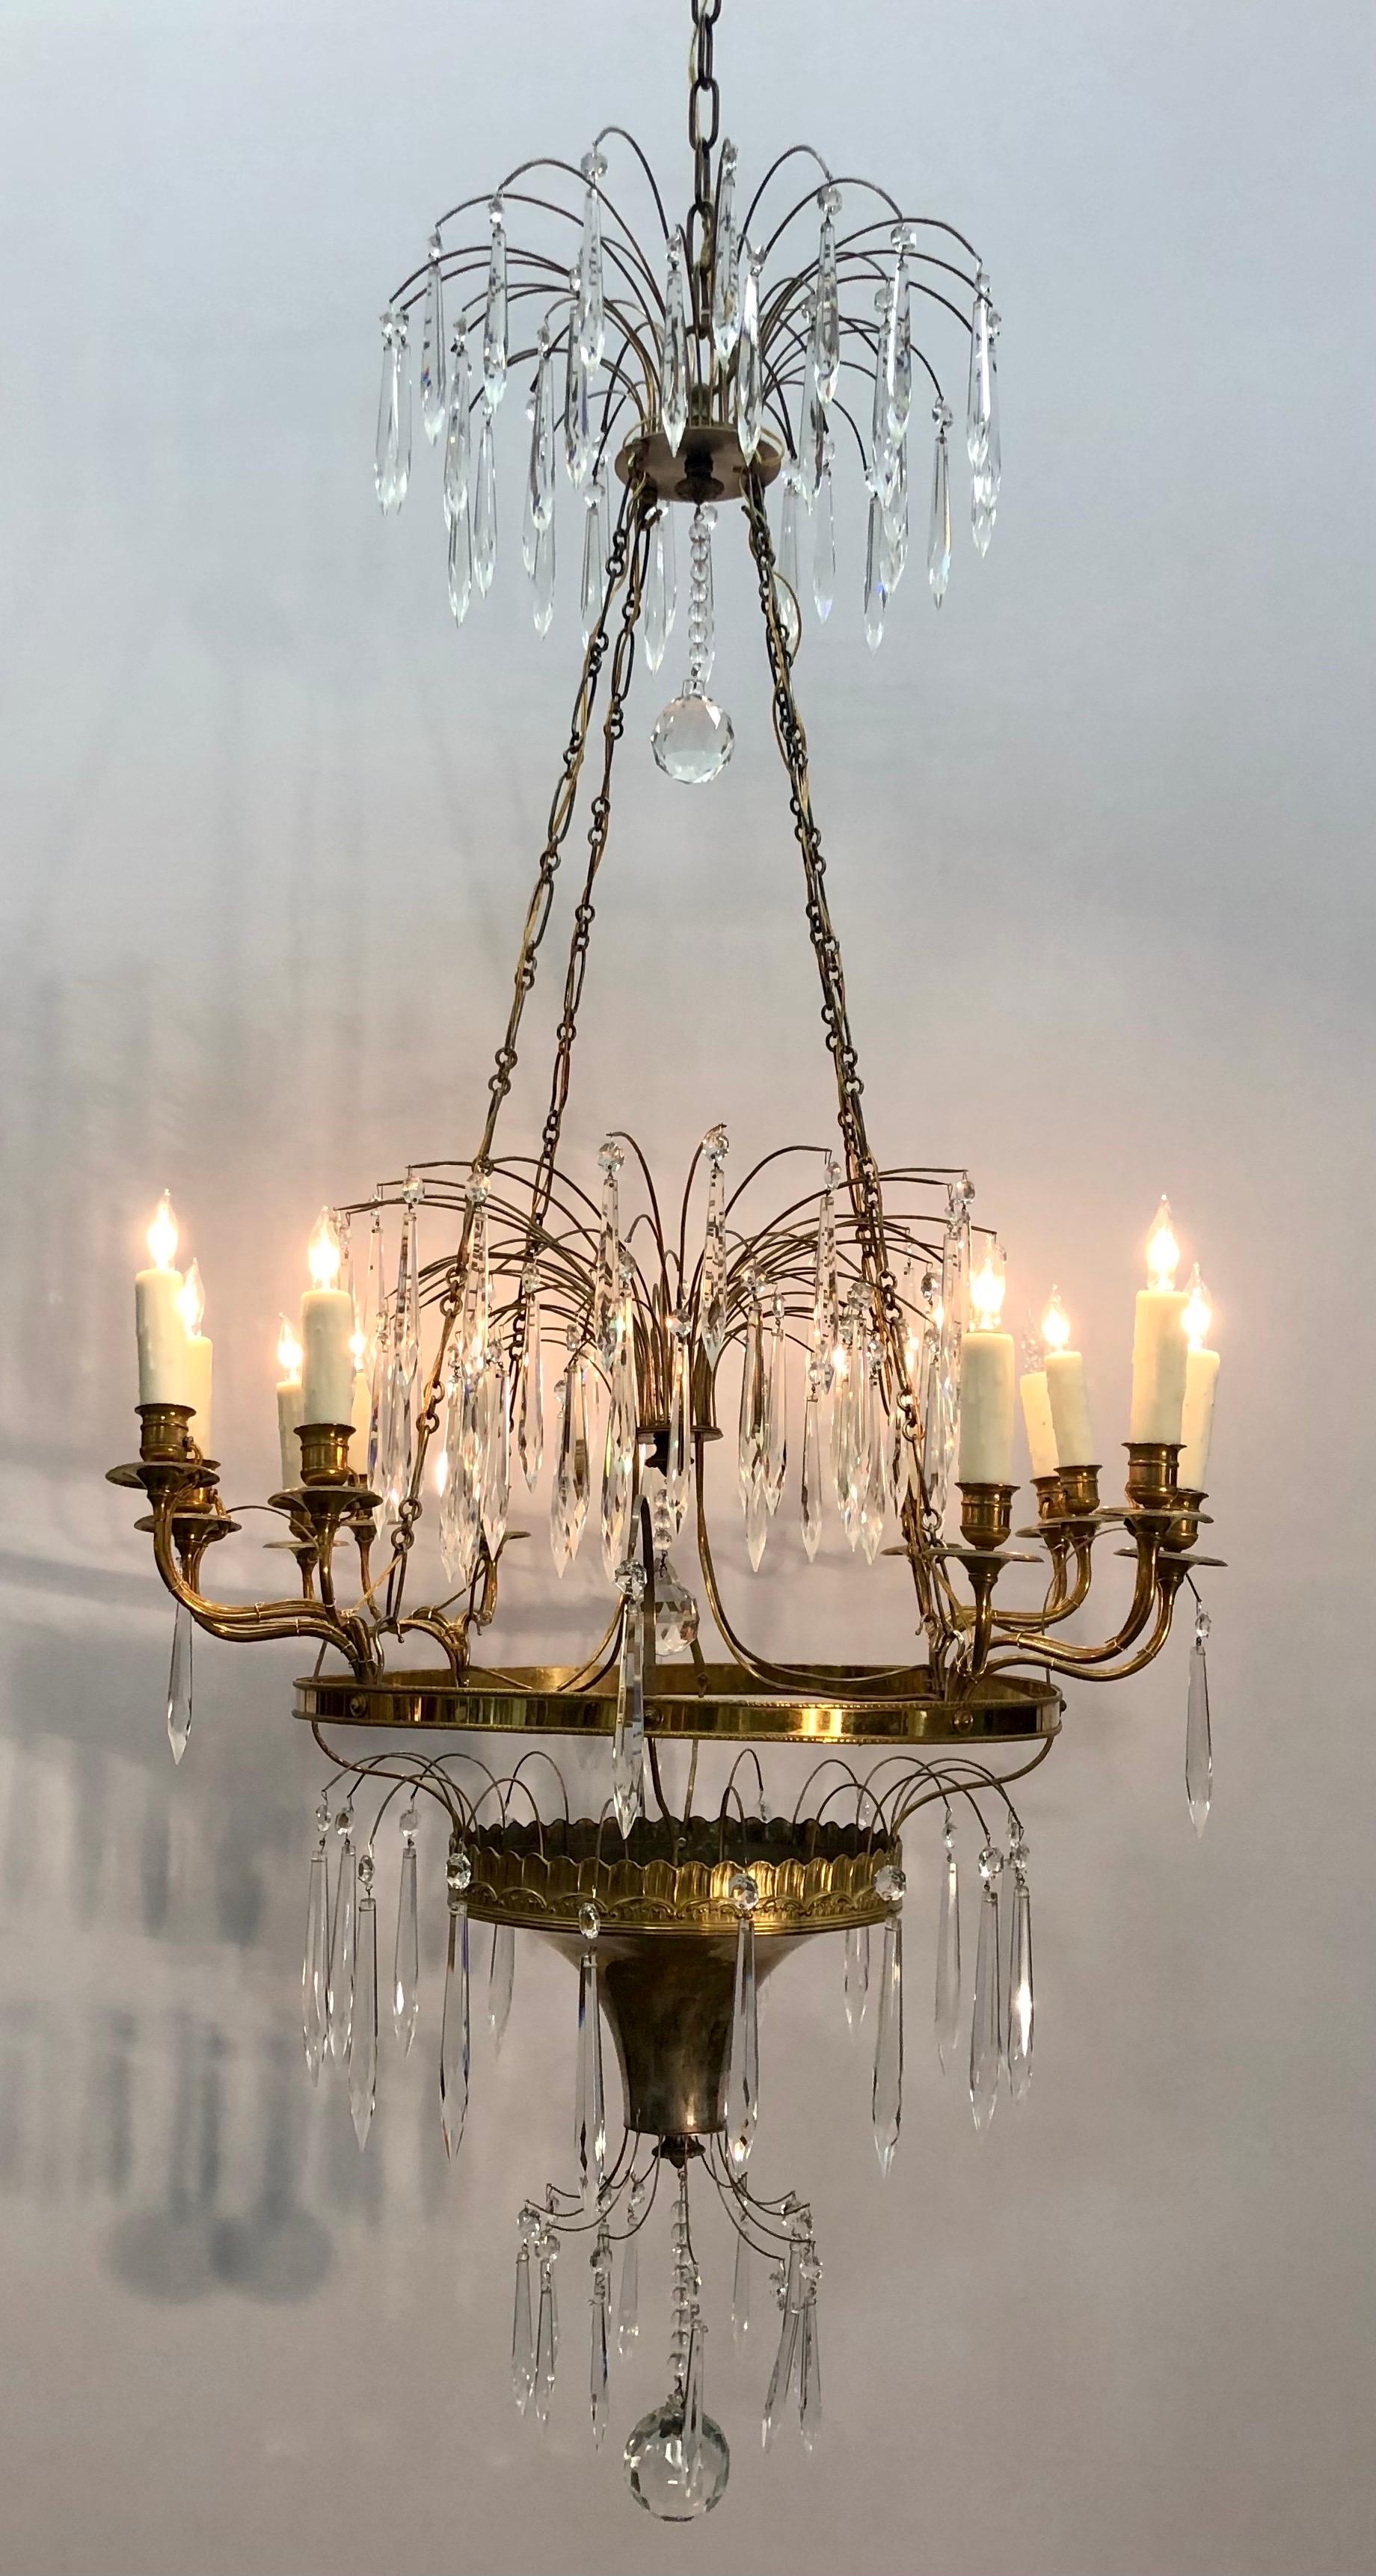 Dieser königliche Kronleuchter aus der gustavianischen Periode im russisch-kaiserlichen Stil hat zwölf Kerzenzweige und ist aus dorierter und versilberter Bronze gefertigt und mit facettierten Anhängern aus Eiszapfenkristall bestückt. Der elegante